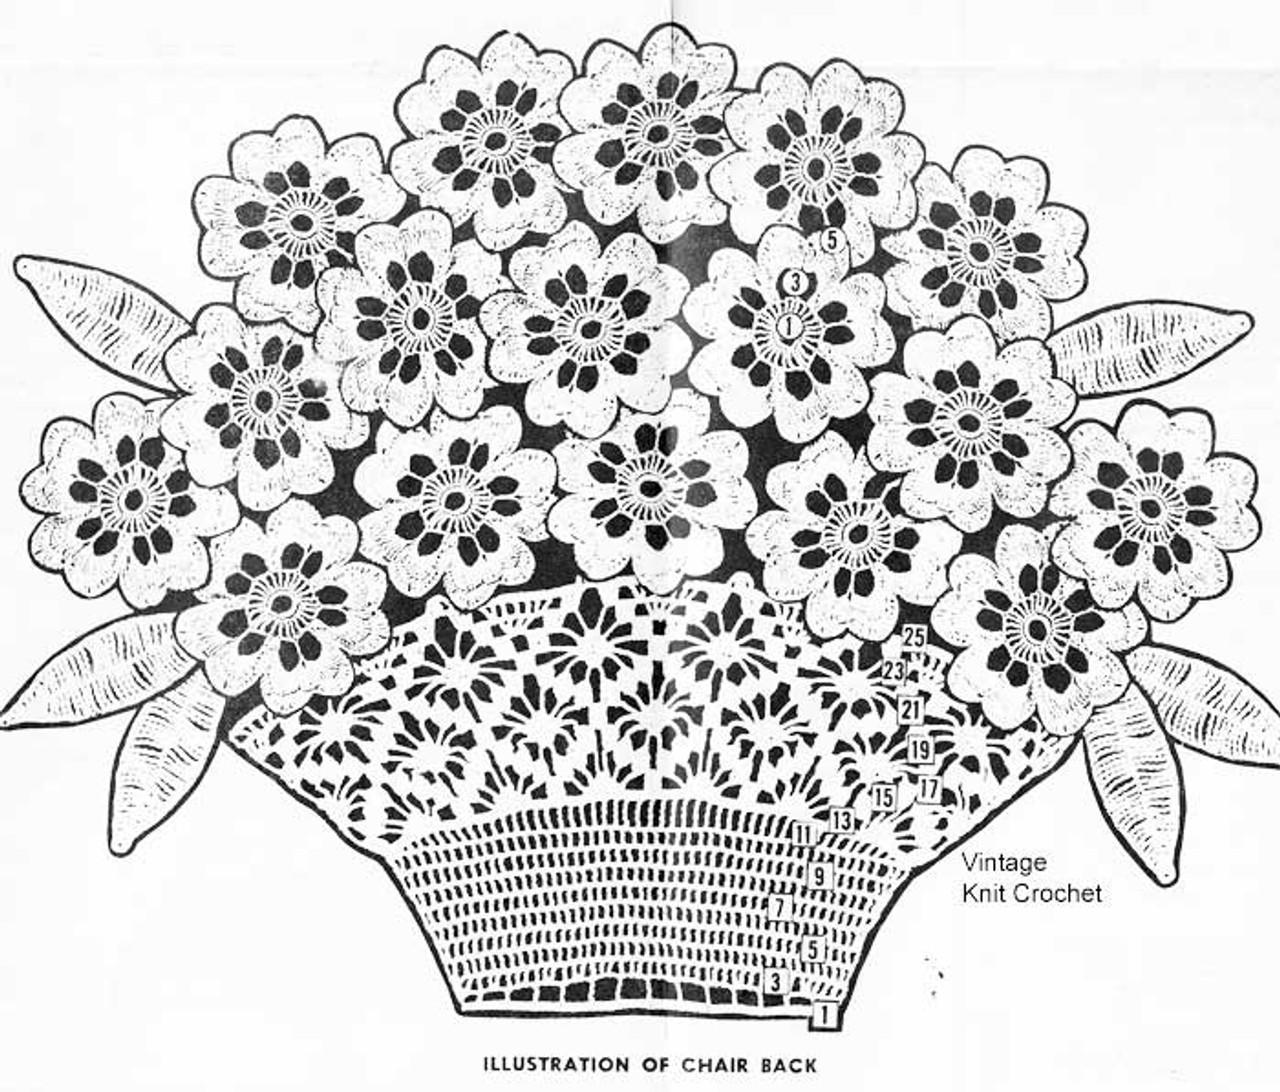 Crochet flower basket chair back illustration alice brooks 7493